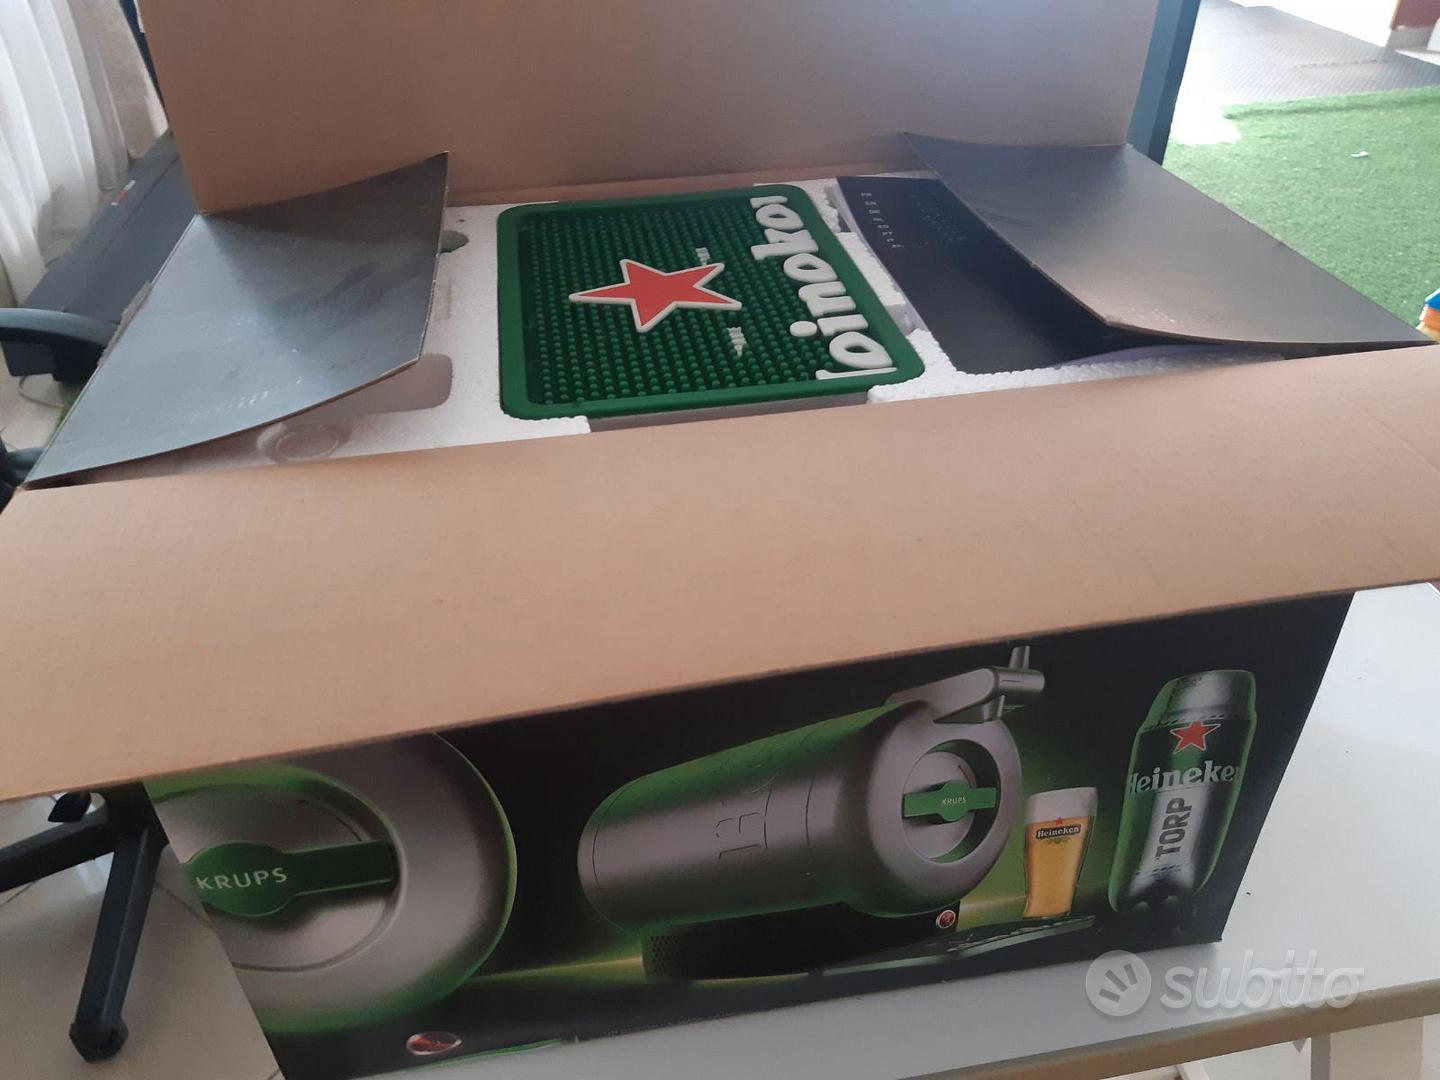 Spillatore birra The Sub Heineken - Elettrodomestici In vendita a Chieti